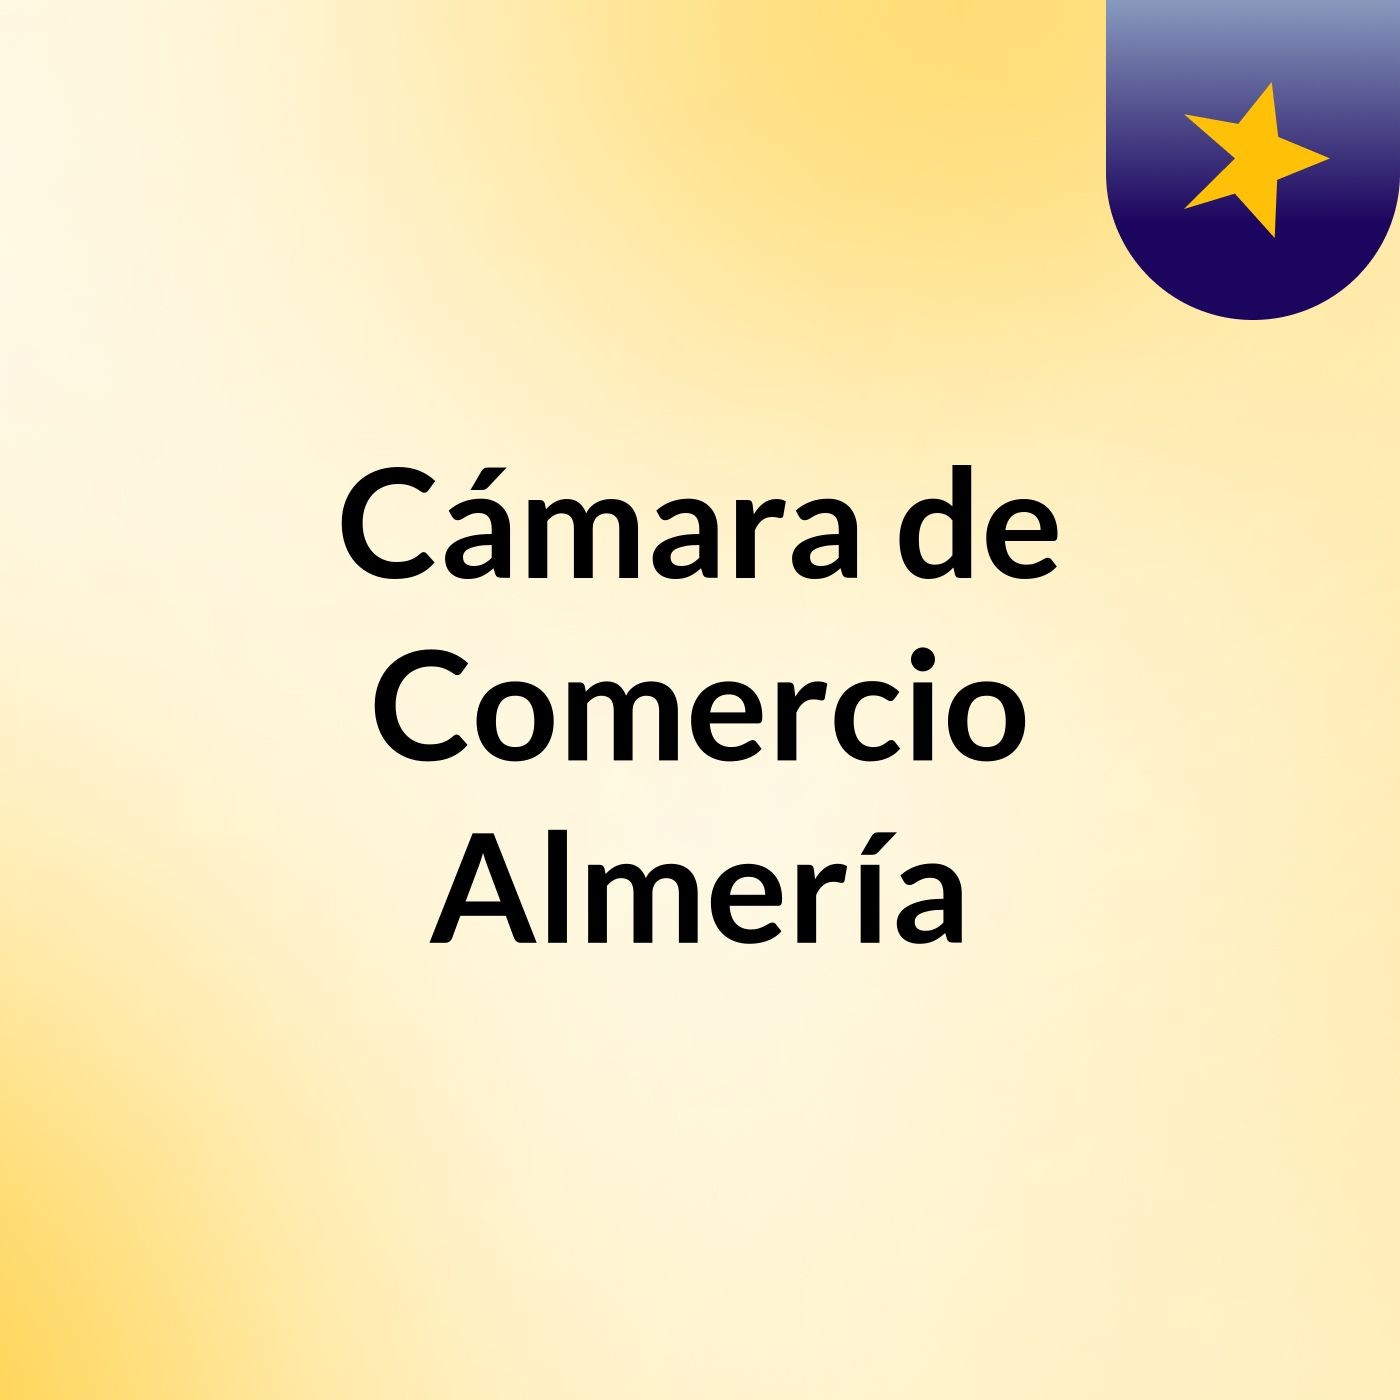 Cámara de Comercio Almería